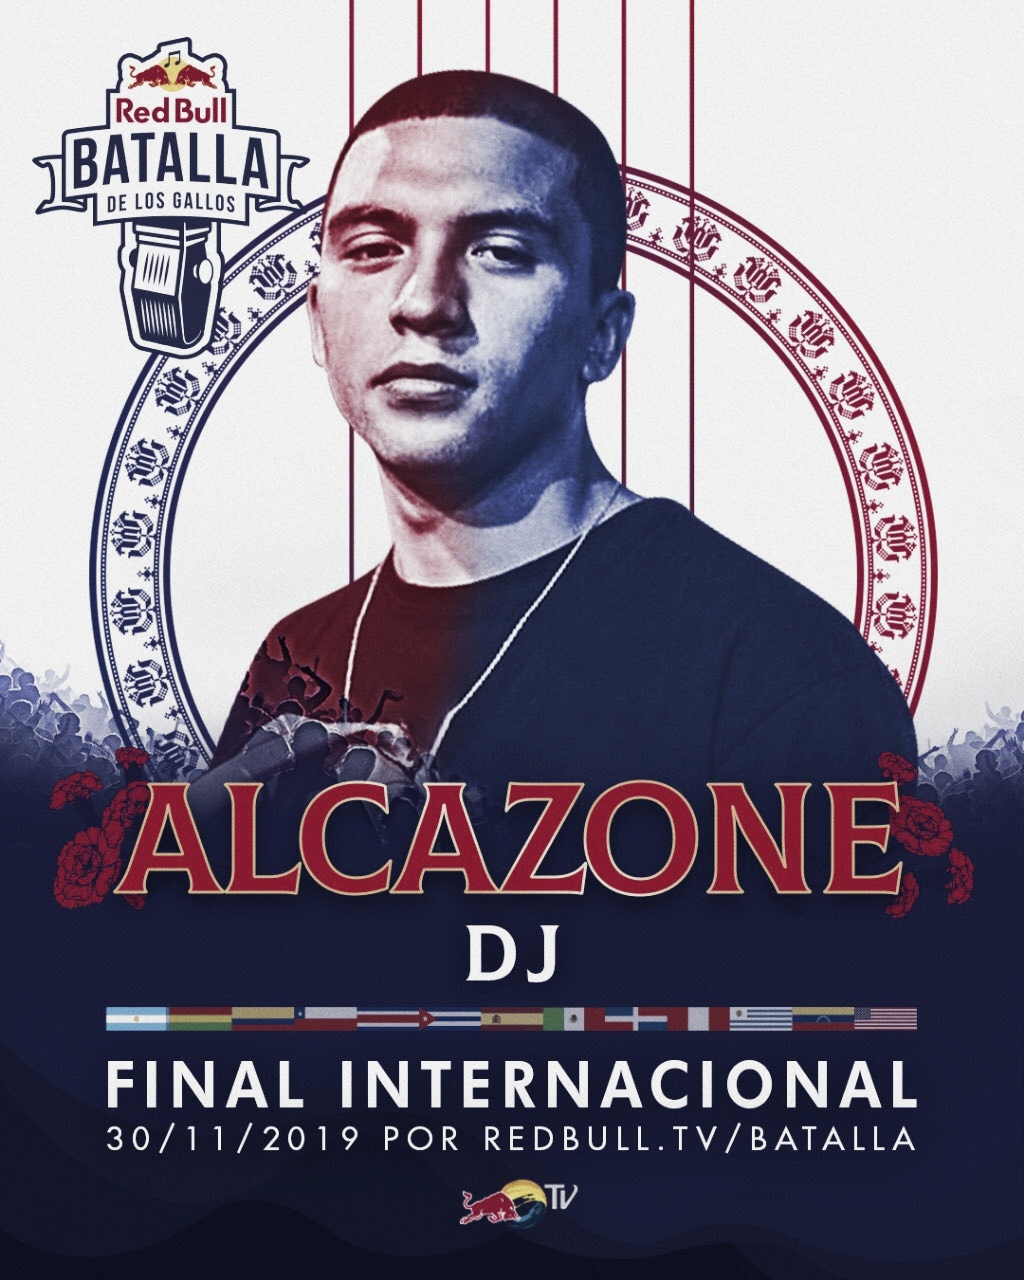 Alcazone será el DJ en la Final Internacional de Red Bull